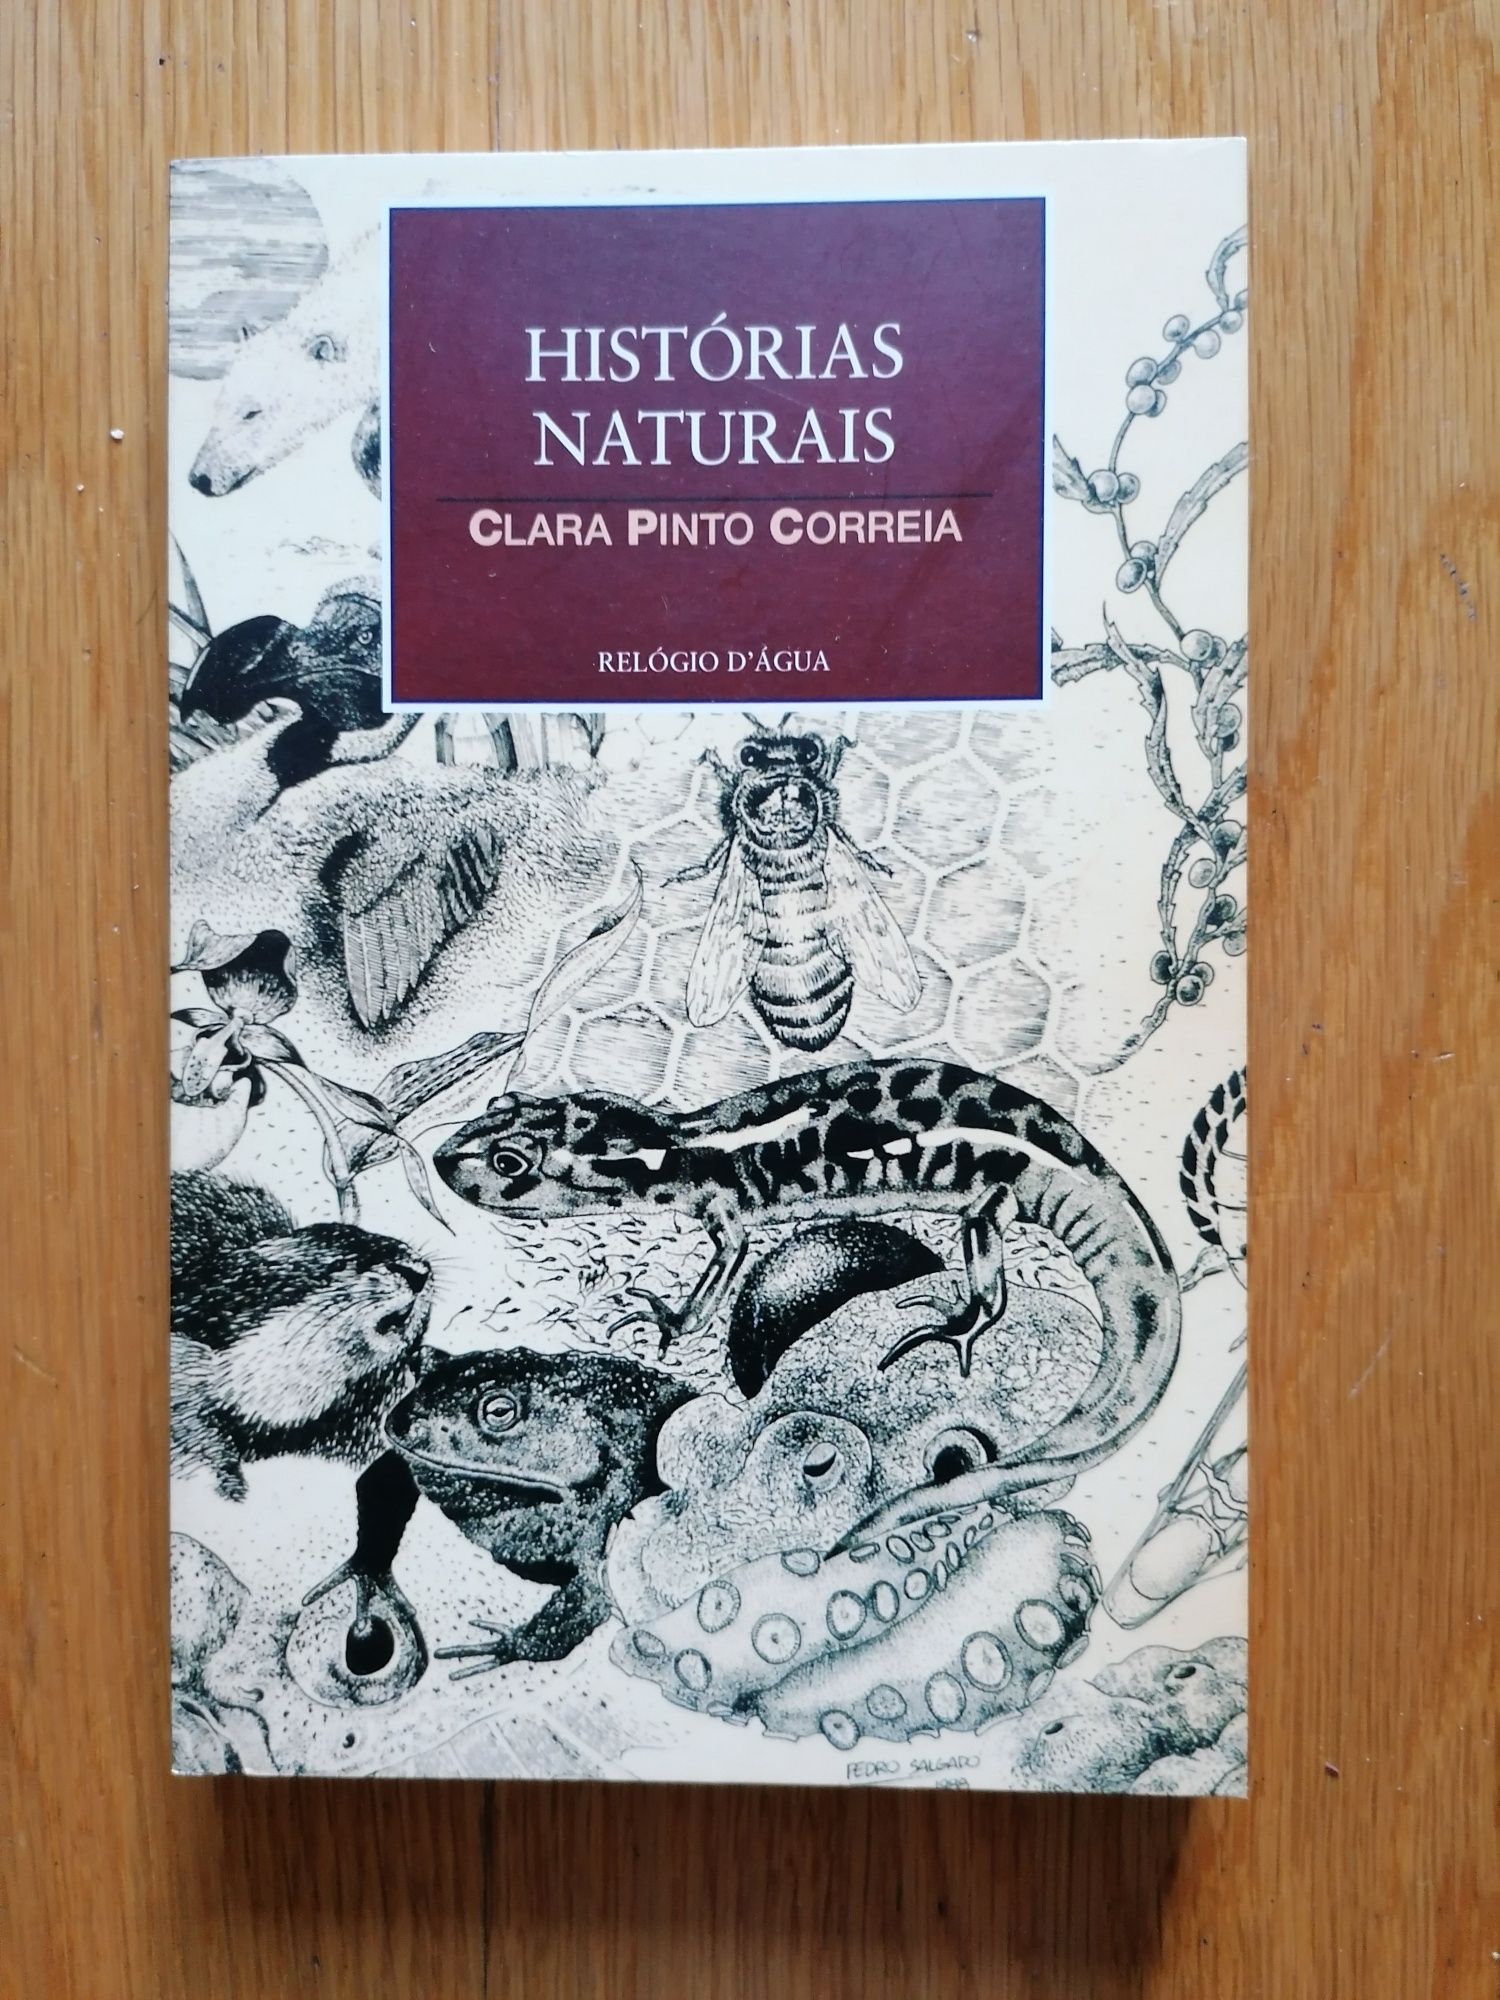 4&1Quarto,de Rita Ferro e Histórias Naturais, de Clara Pinto Correia